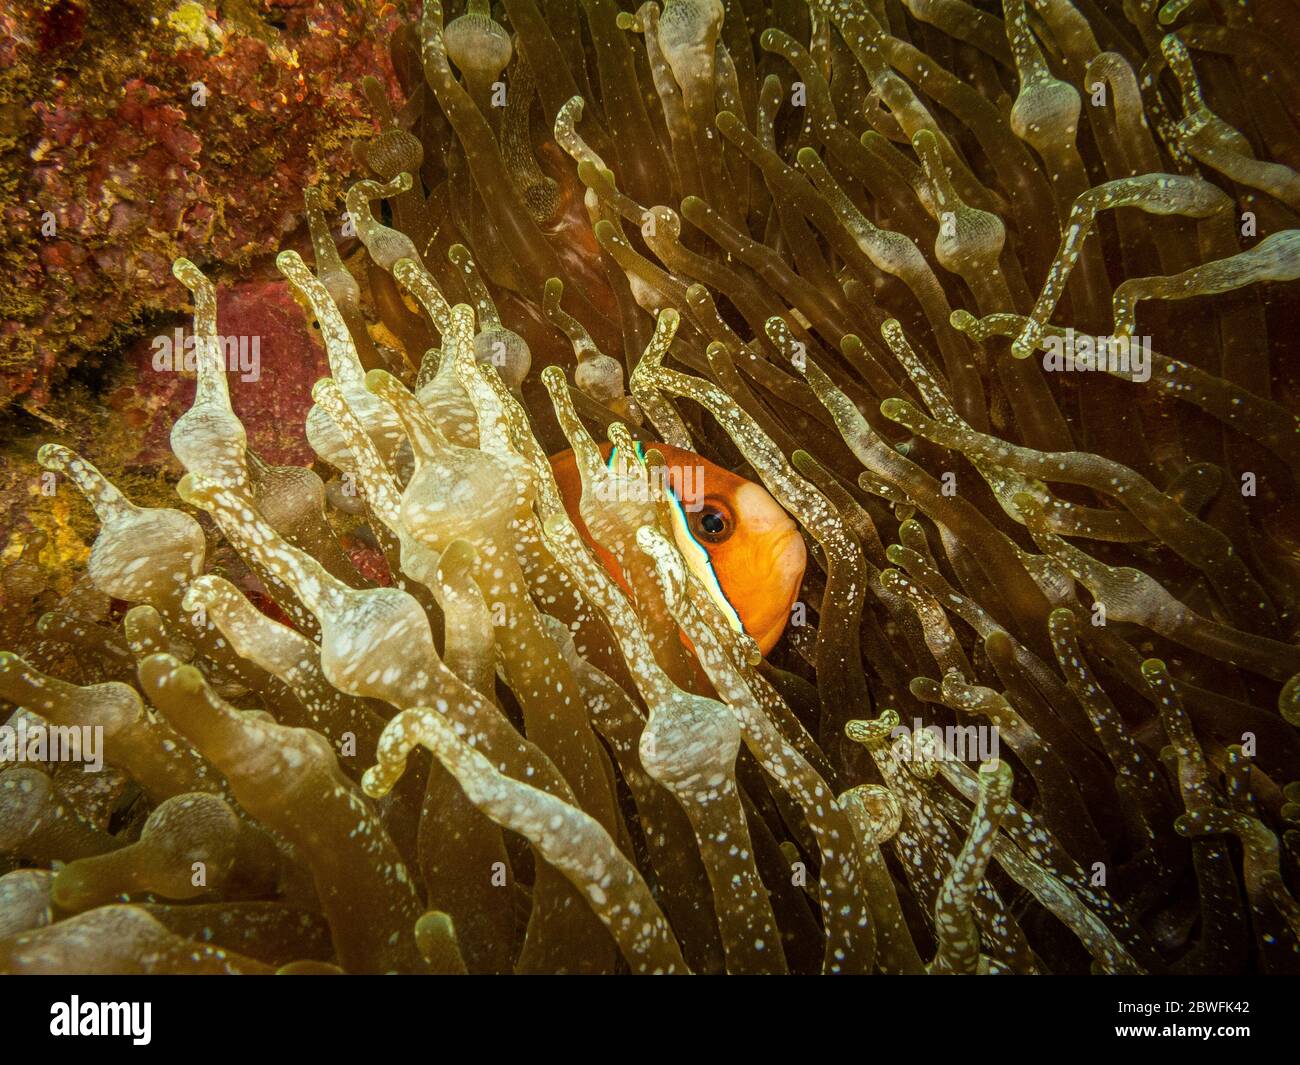 Amphiprion clarkii ou anemonefish de Clark (également appelé clownfish à queue jaune) qui se délite de sa maison dans une anémone de mer qui s'écaille Banque D'Images